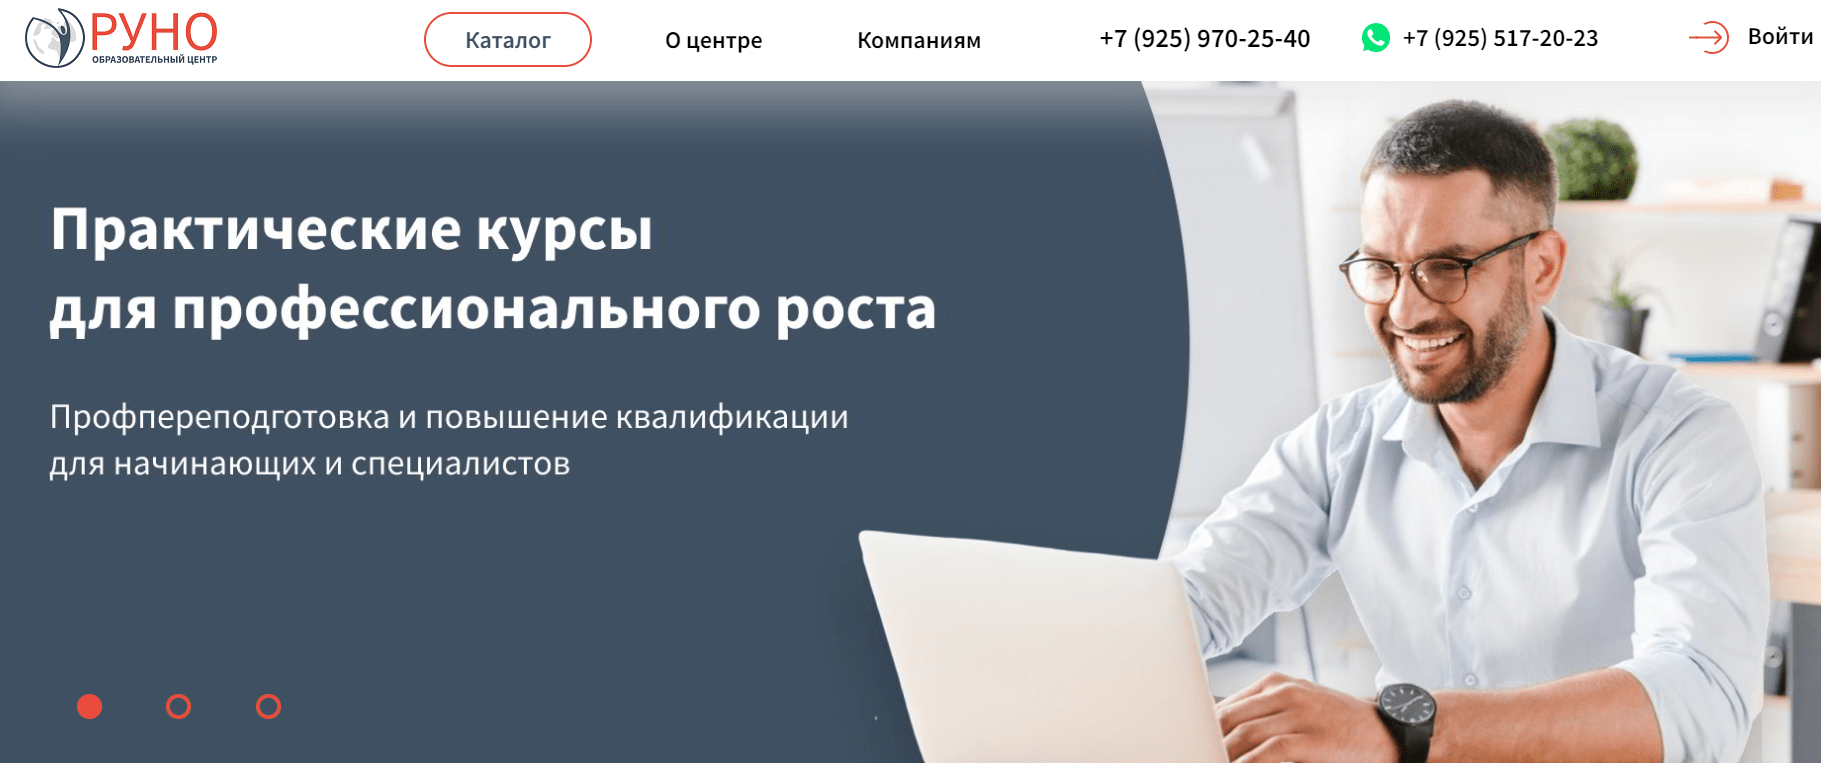 Лучшие курсы бухгалтеров в Москве - Руно